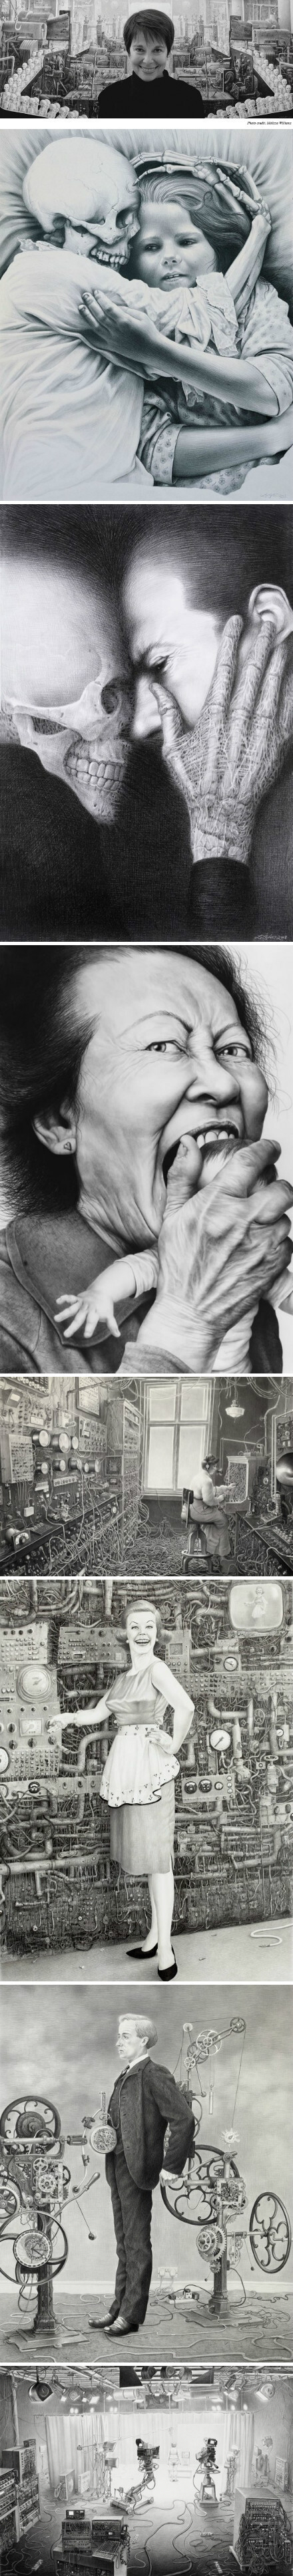 美国著名死亡美学画家laurie lipton作品——她的铅笔画,可以说达到了